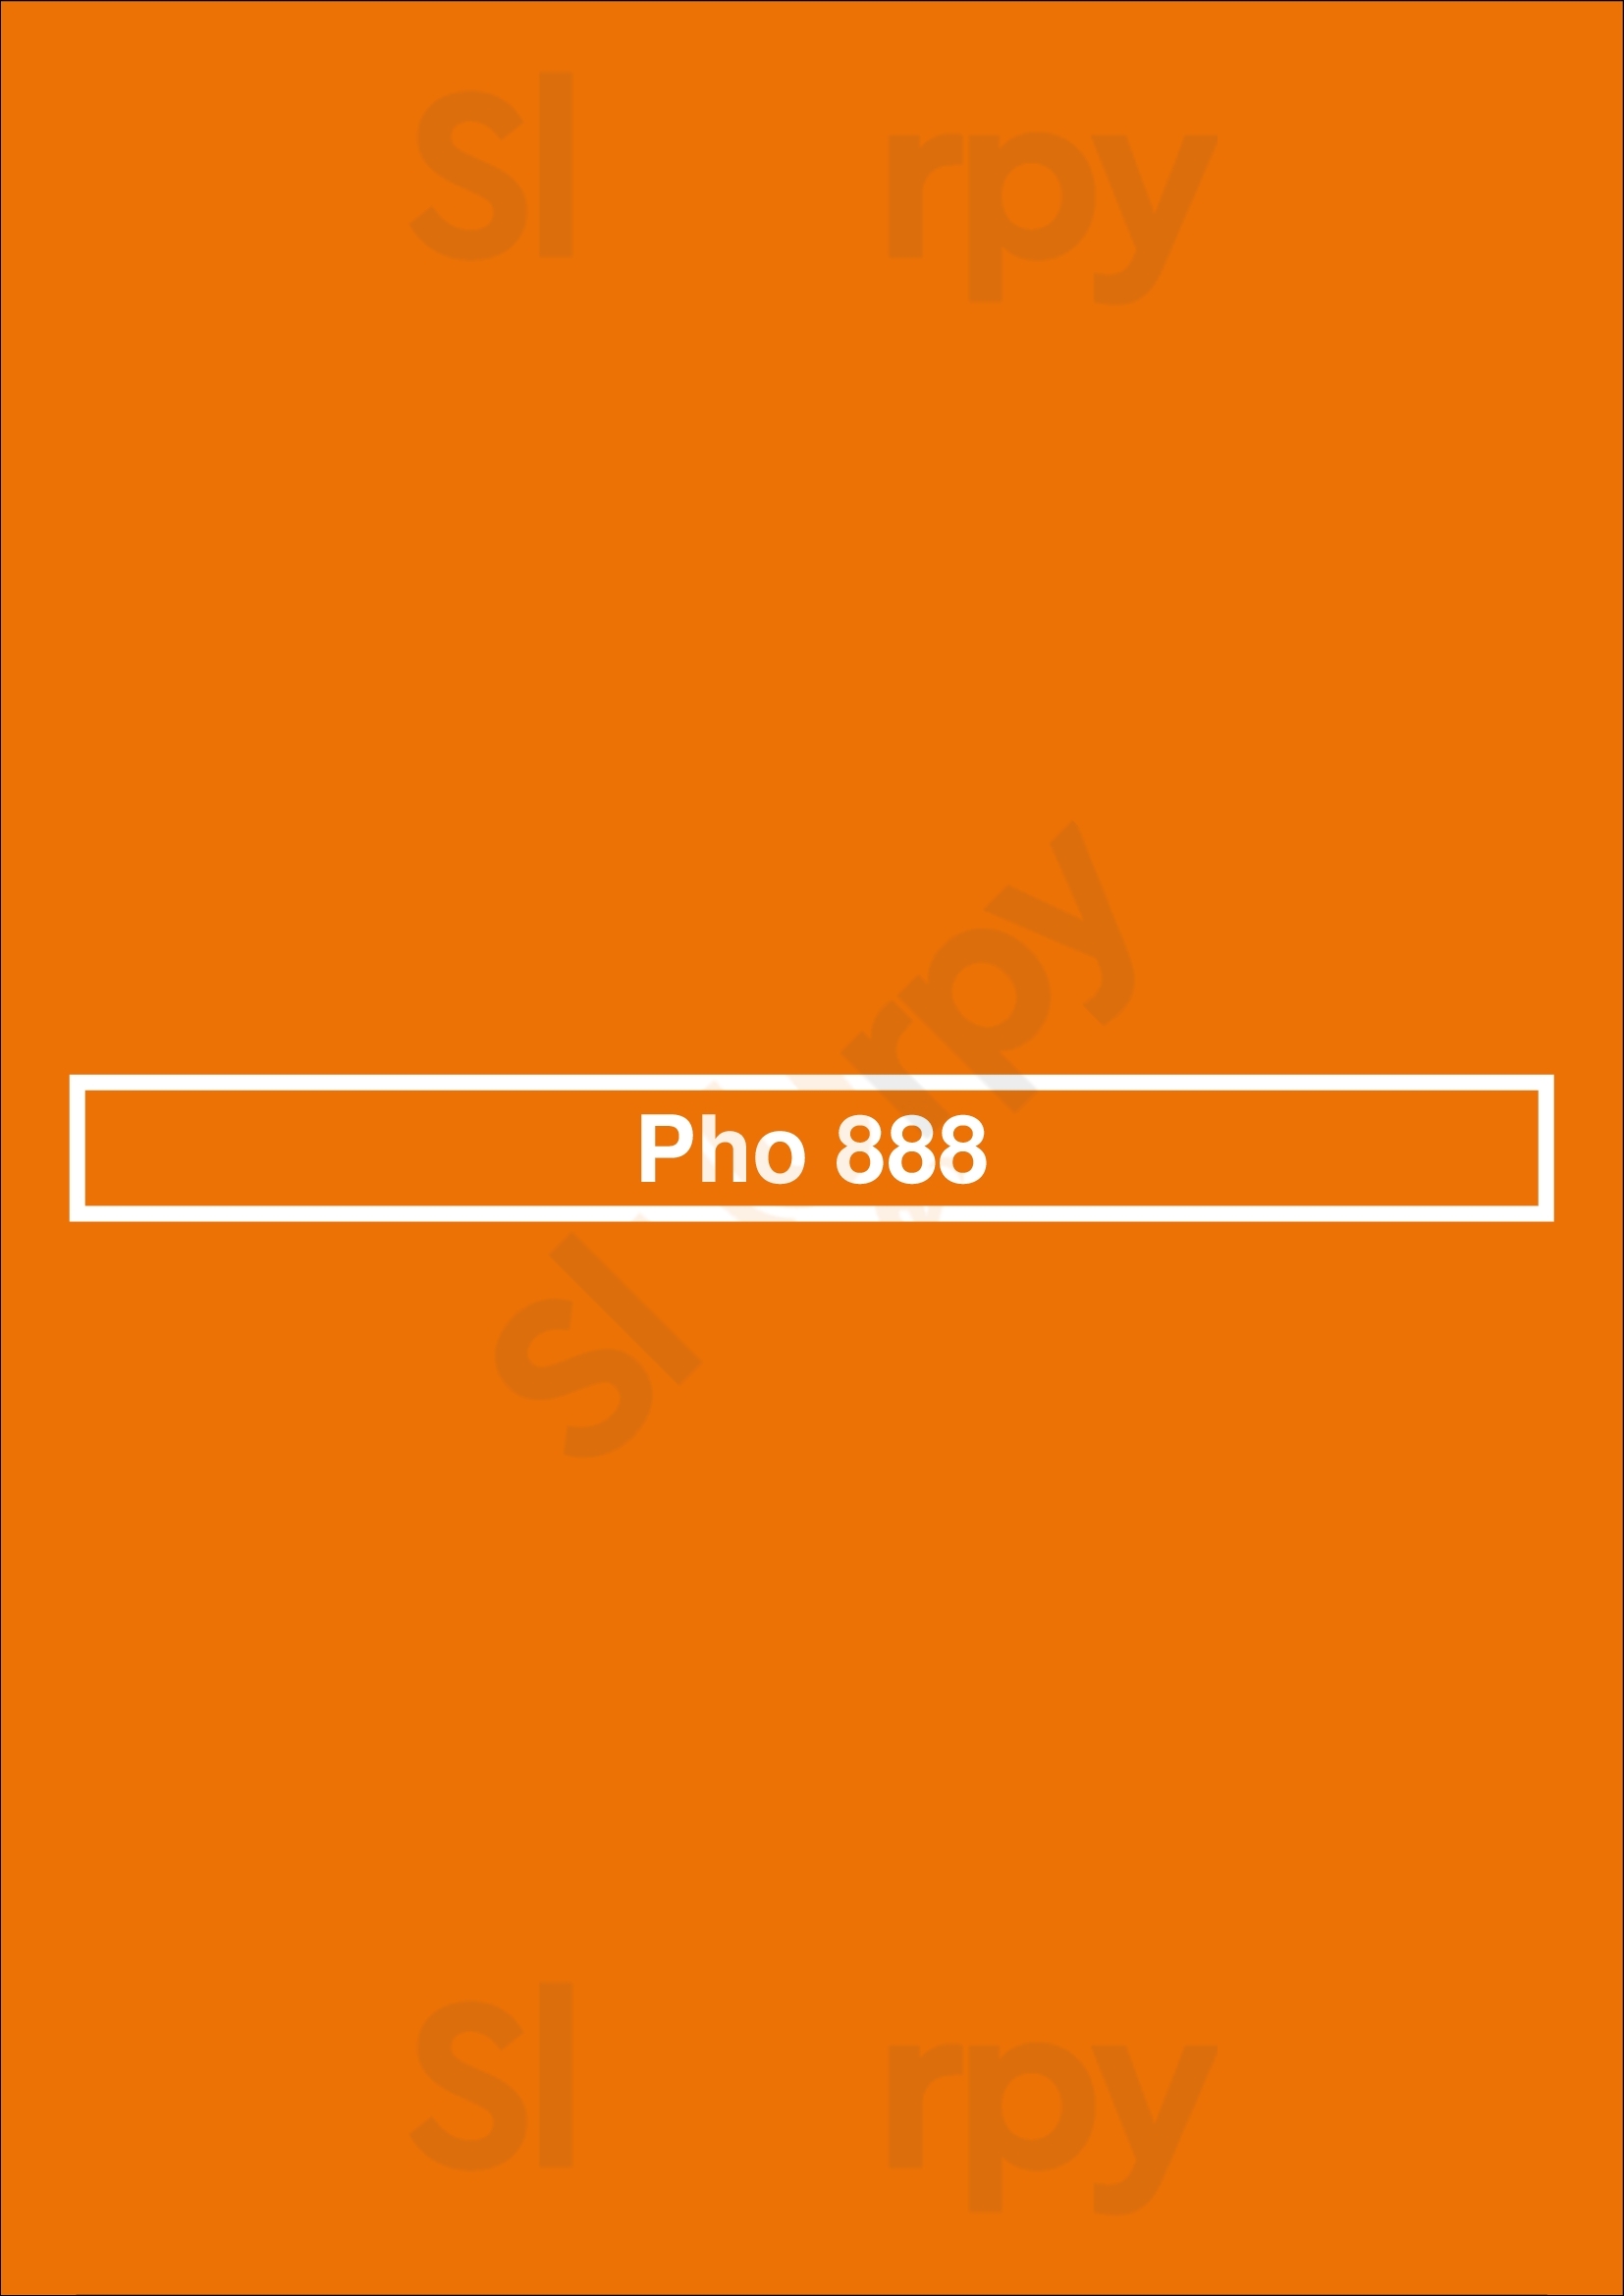 Pho 888 Chicago Menu - 1